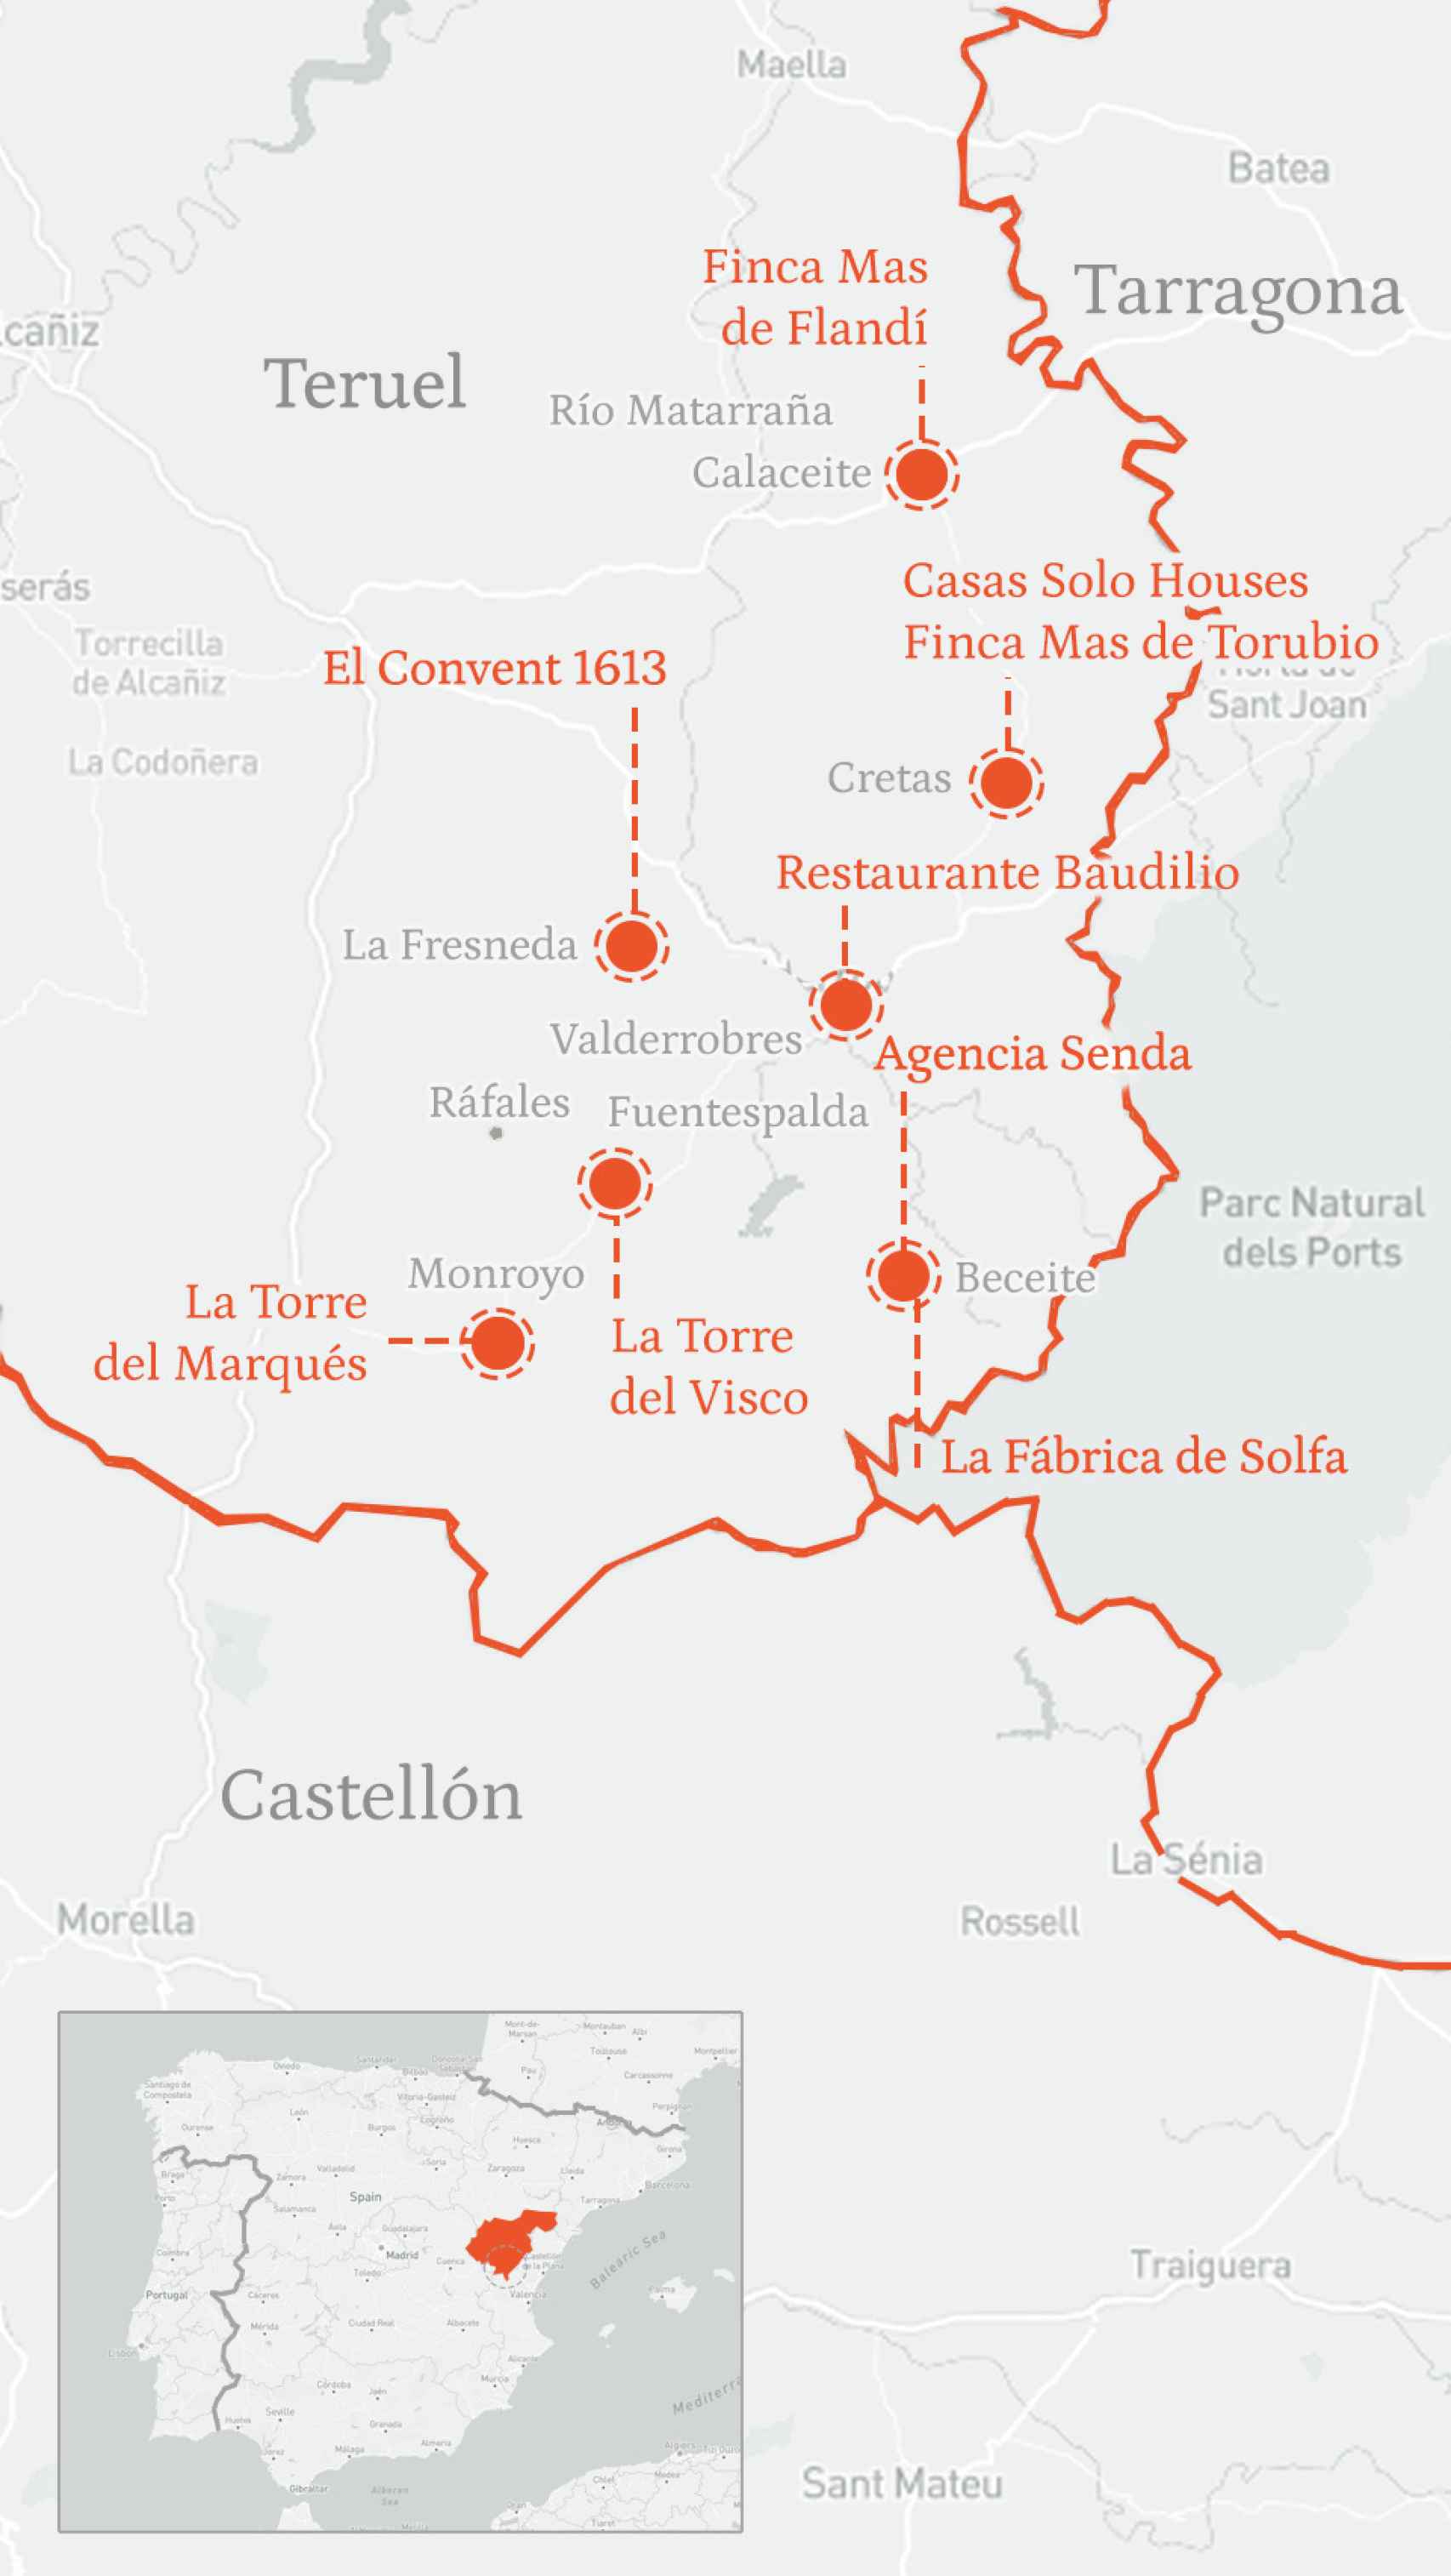 Mapa de la comarca del Matarraña, con los pueblos y establecimientos turísticos visitados en este reportaje.